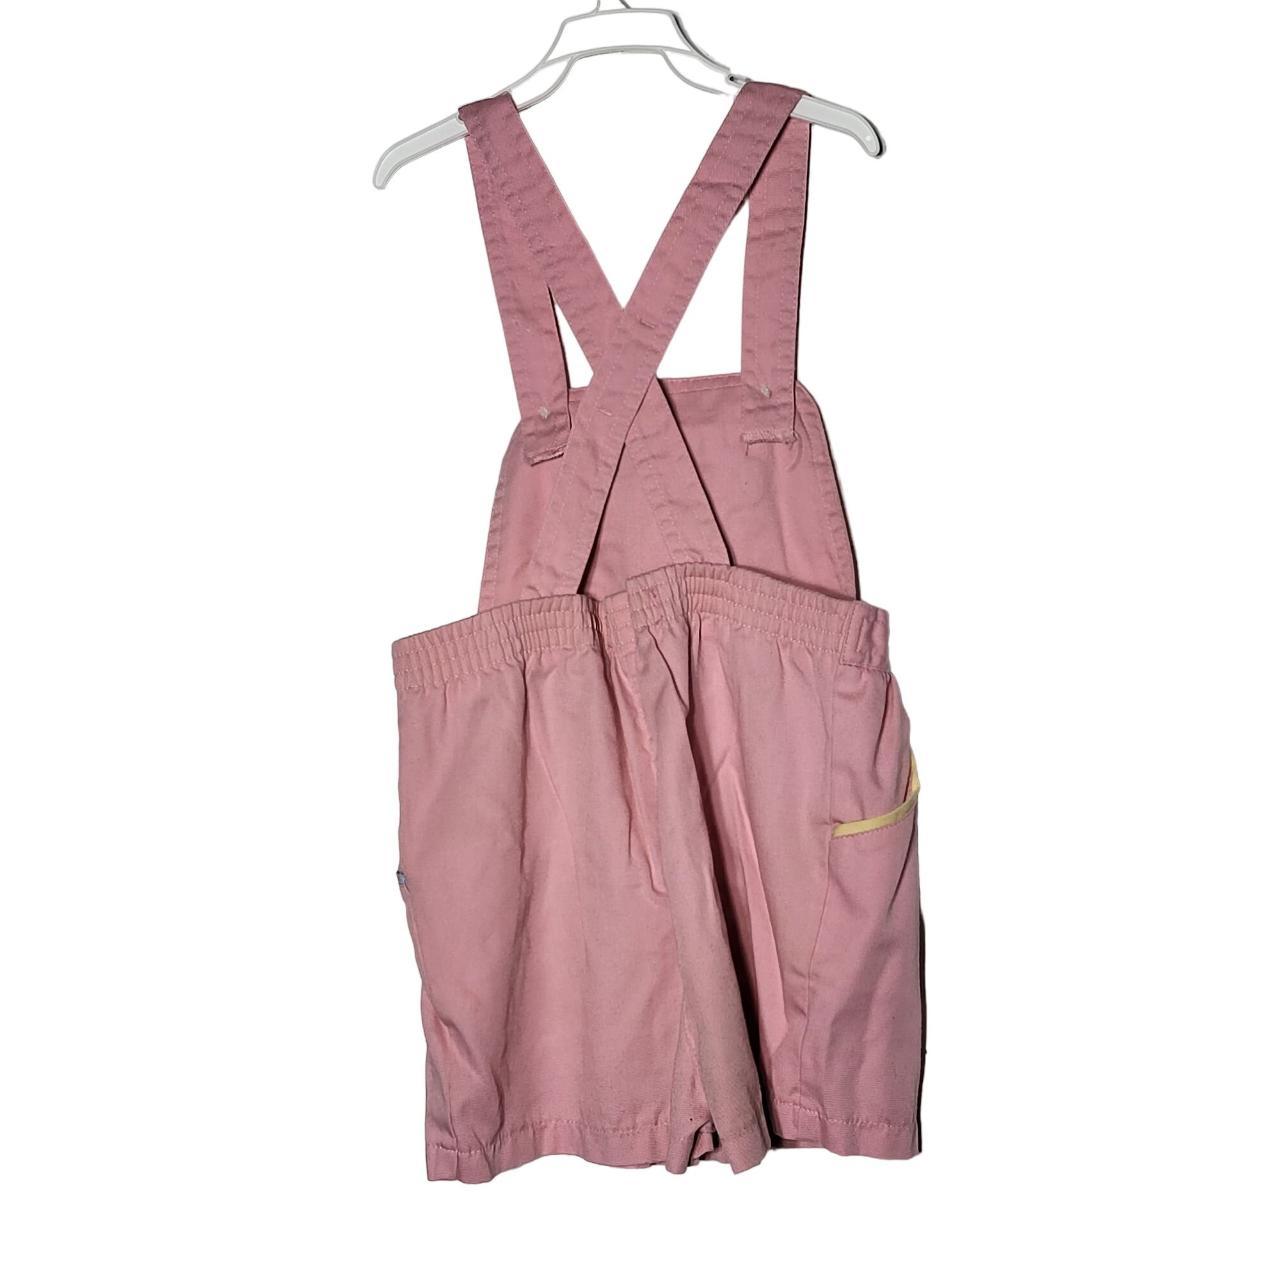 Vintage Izod Lacoste Pink Overalls with a Pocket... - Depop